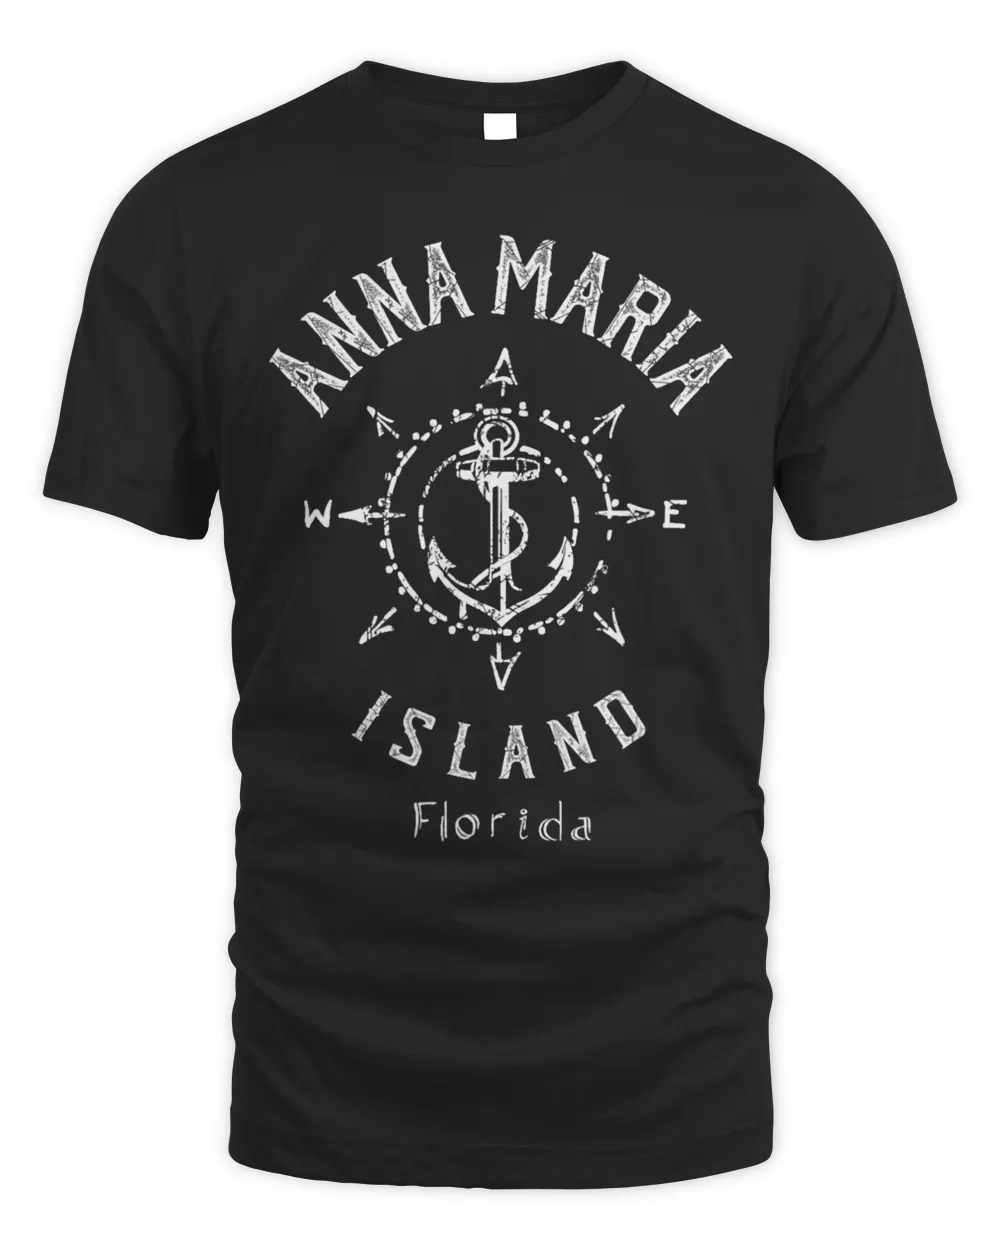 Anna Maria Island Florida Souvenir